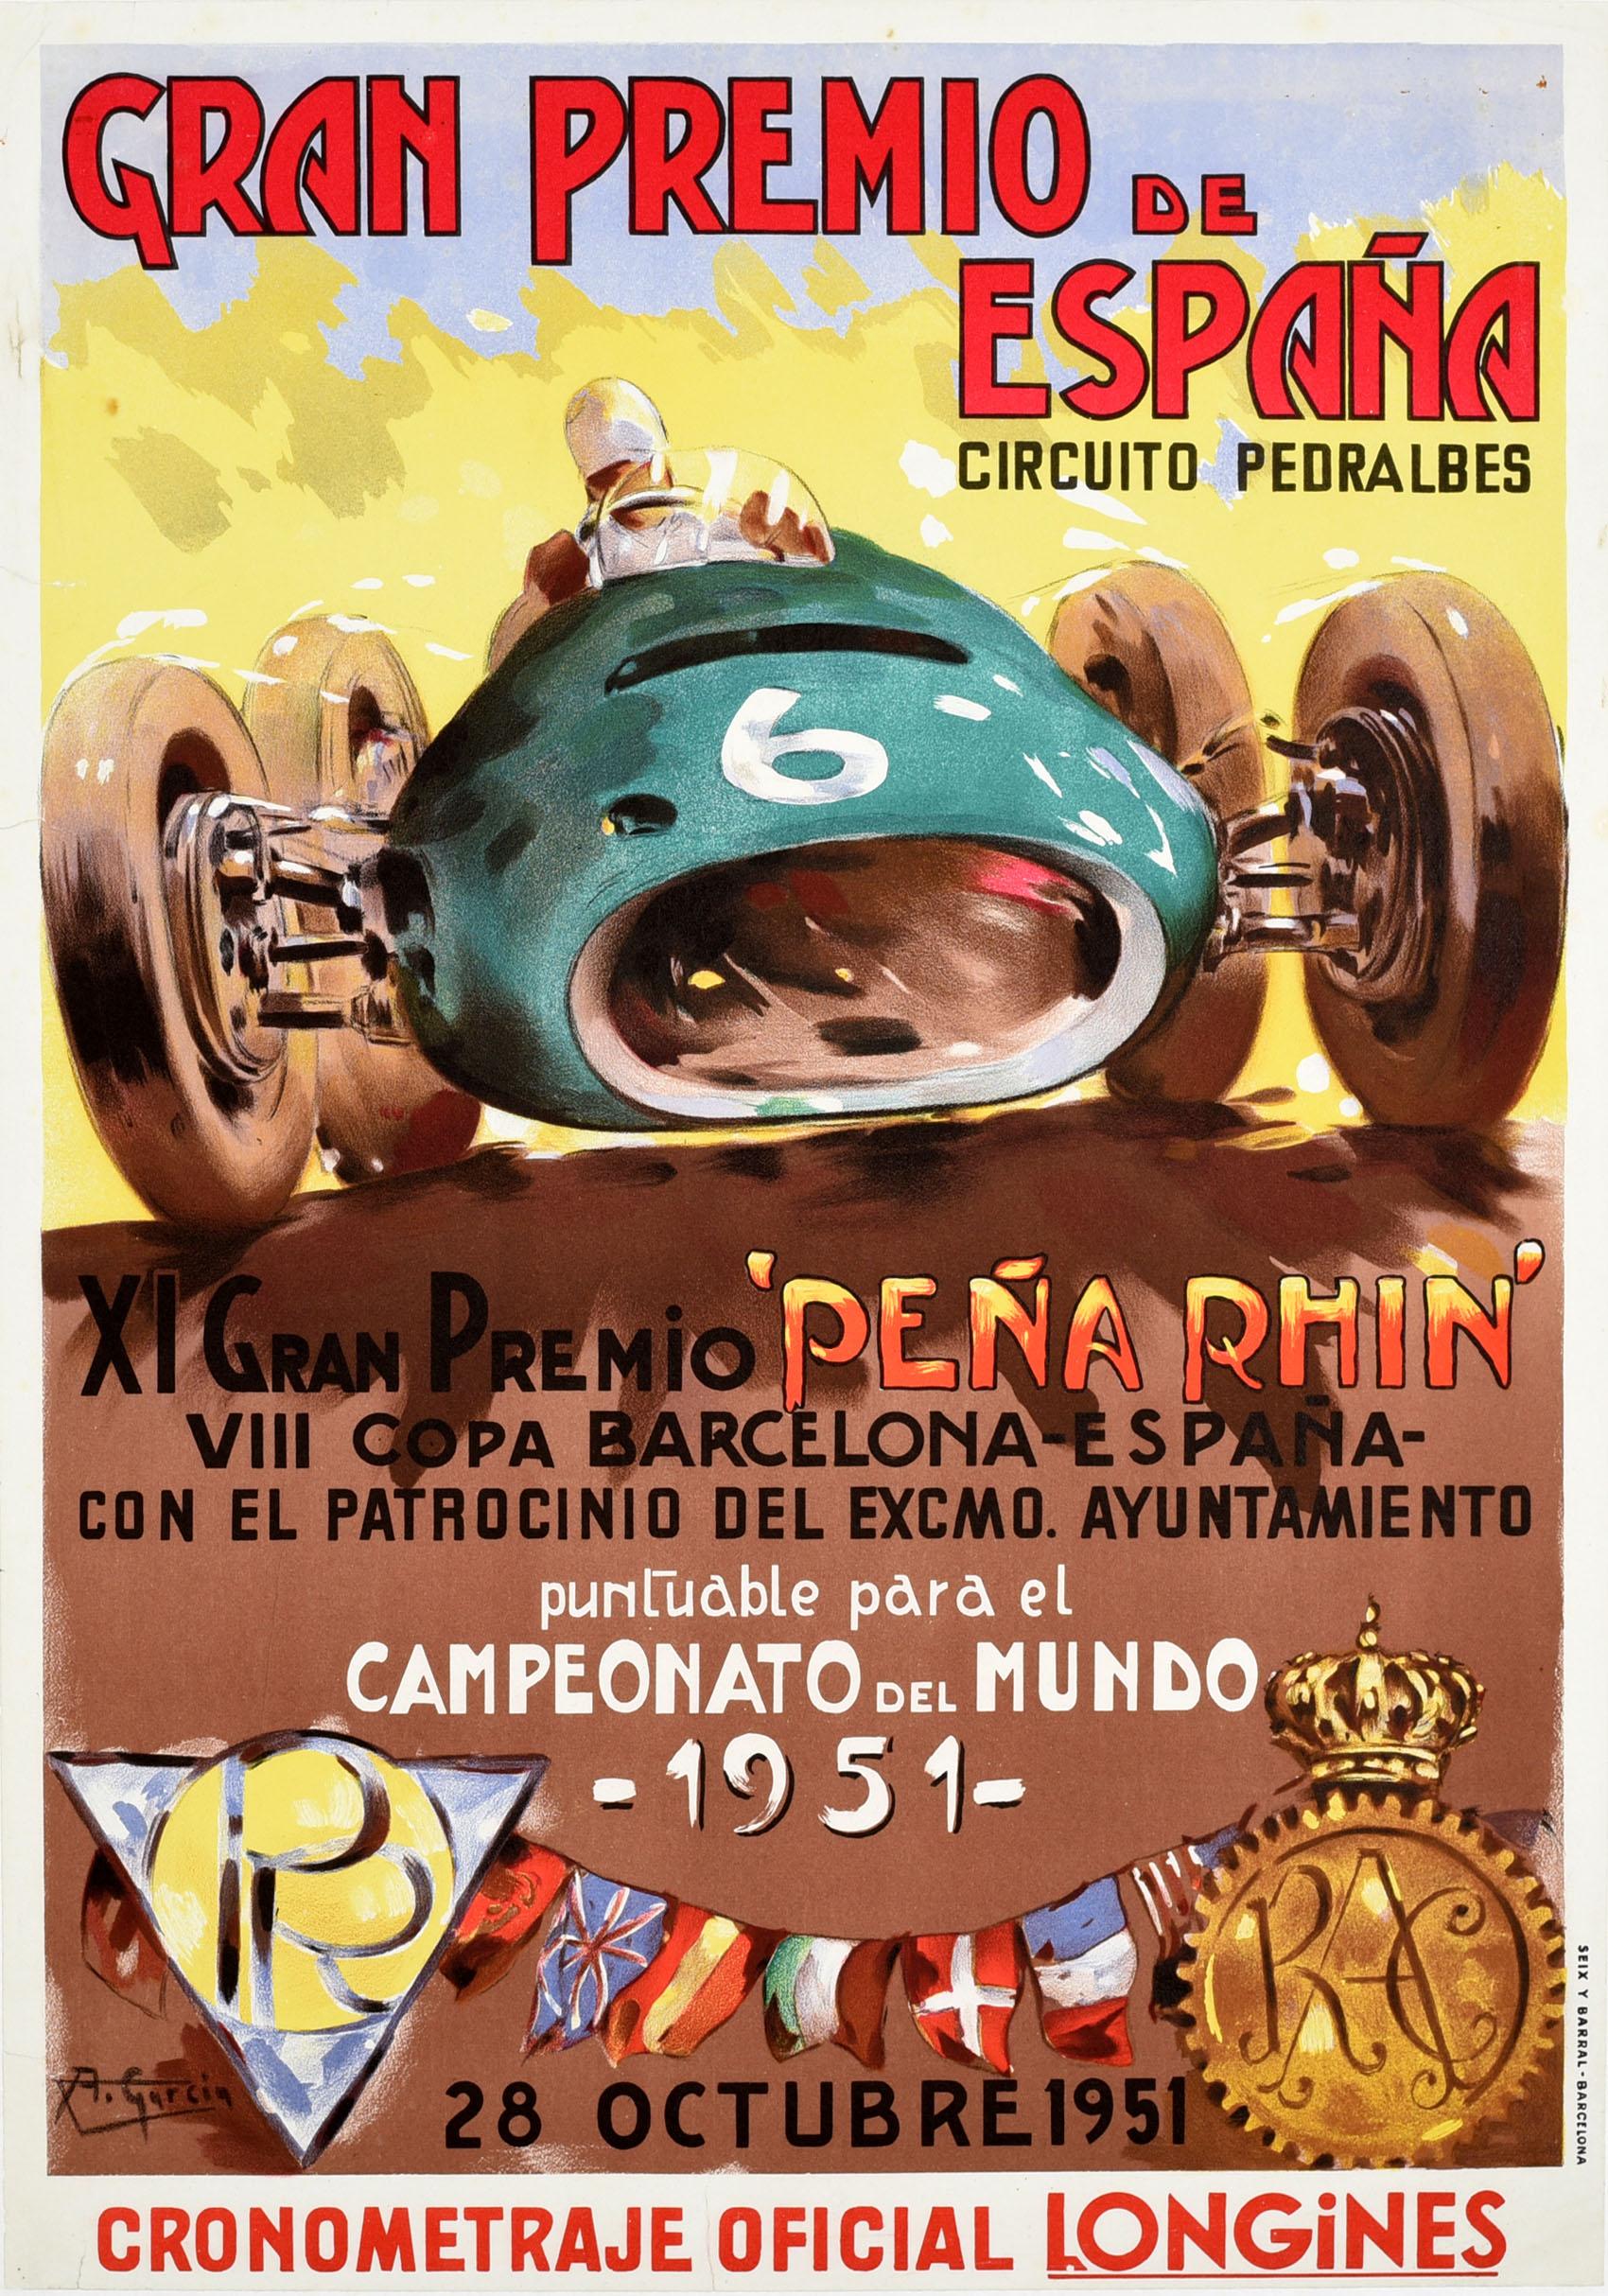 Affiche originale d'époque du GP de Formule 1 pour le Championnat du monde du Grand Prix d'Espagne Circuit Pedralbes / Gran Premio De Espana Circuito Pedralbes le 28 octobre 1951. Elle présente un dessin coloré et dynamique d'une voiture de course